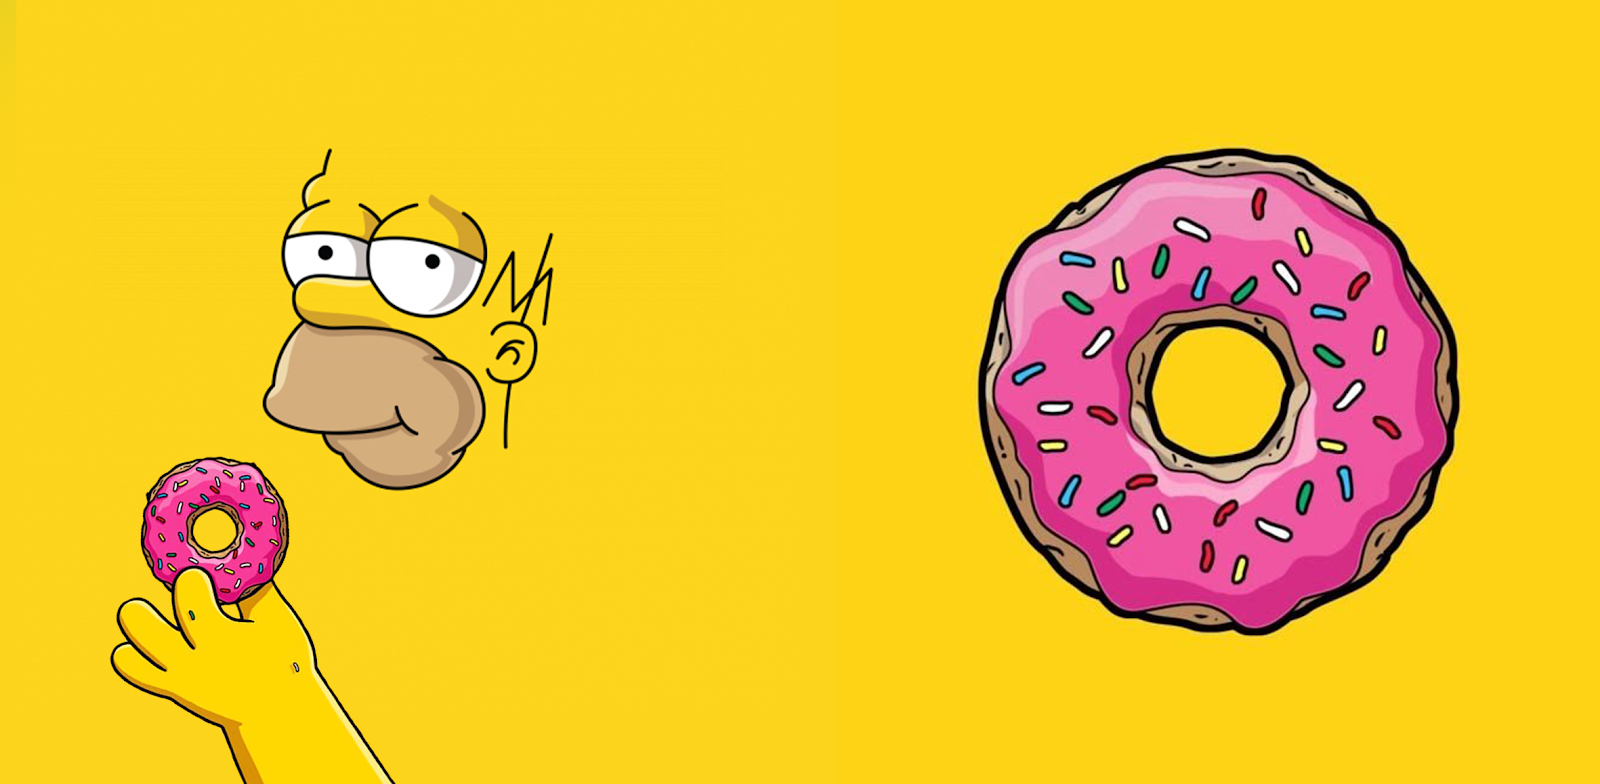 Arte da caneca homer simpson e seus donuts.png